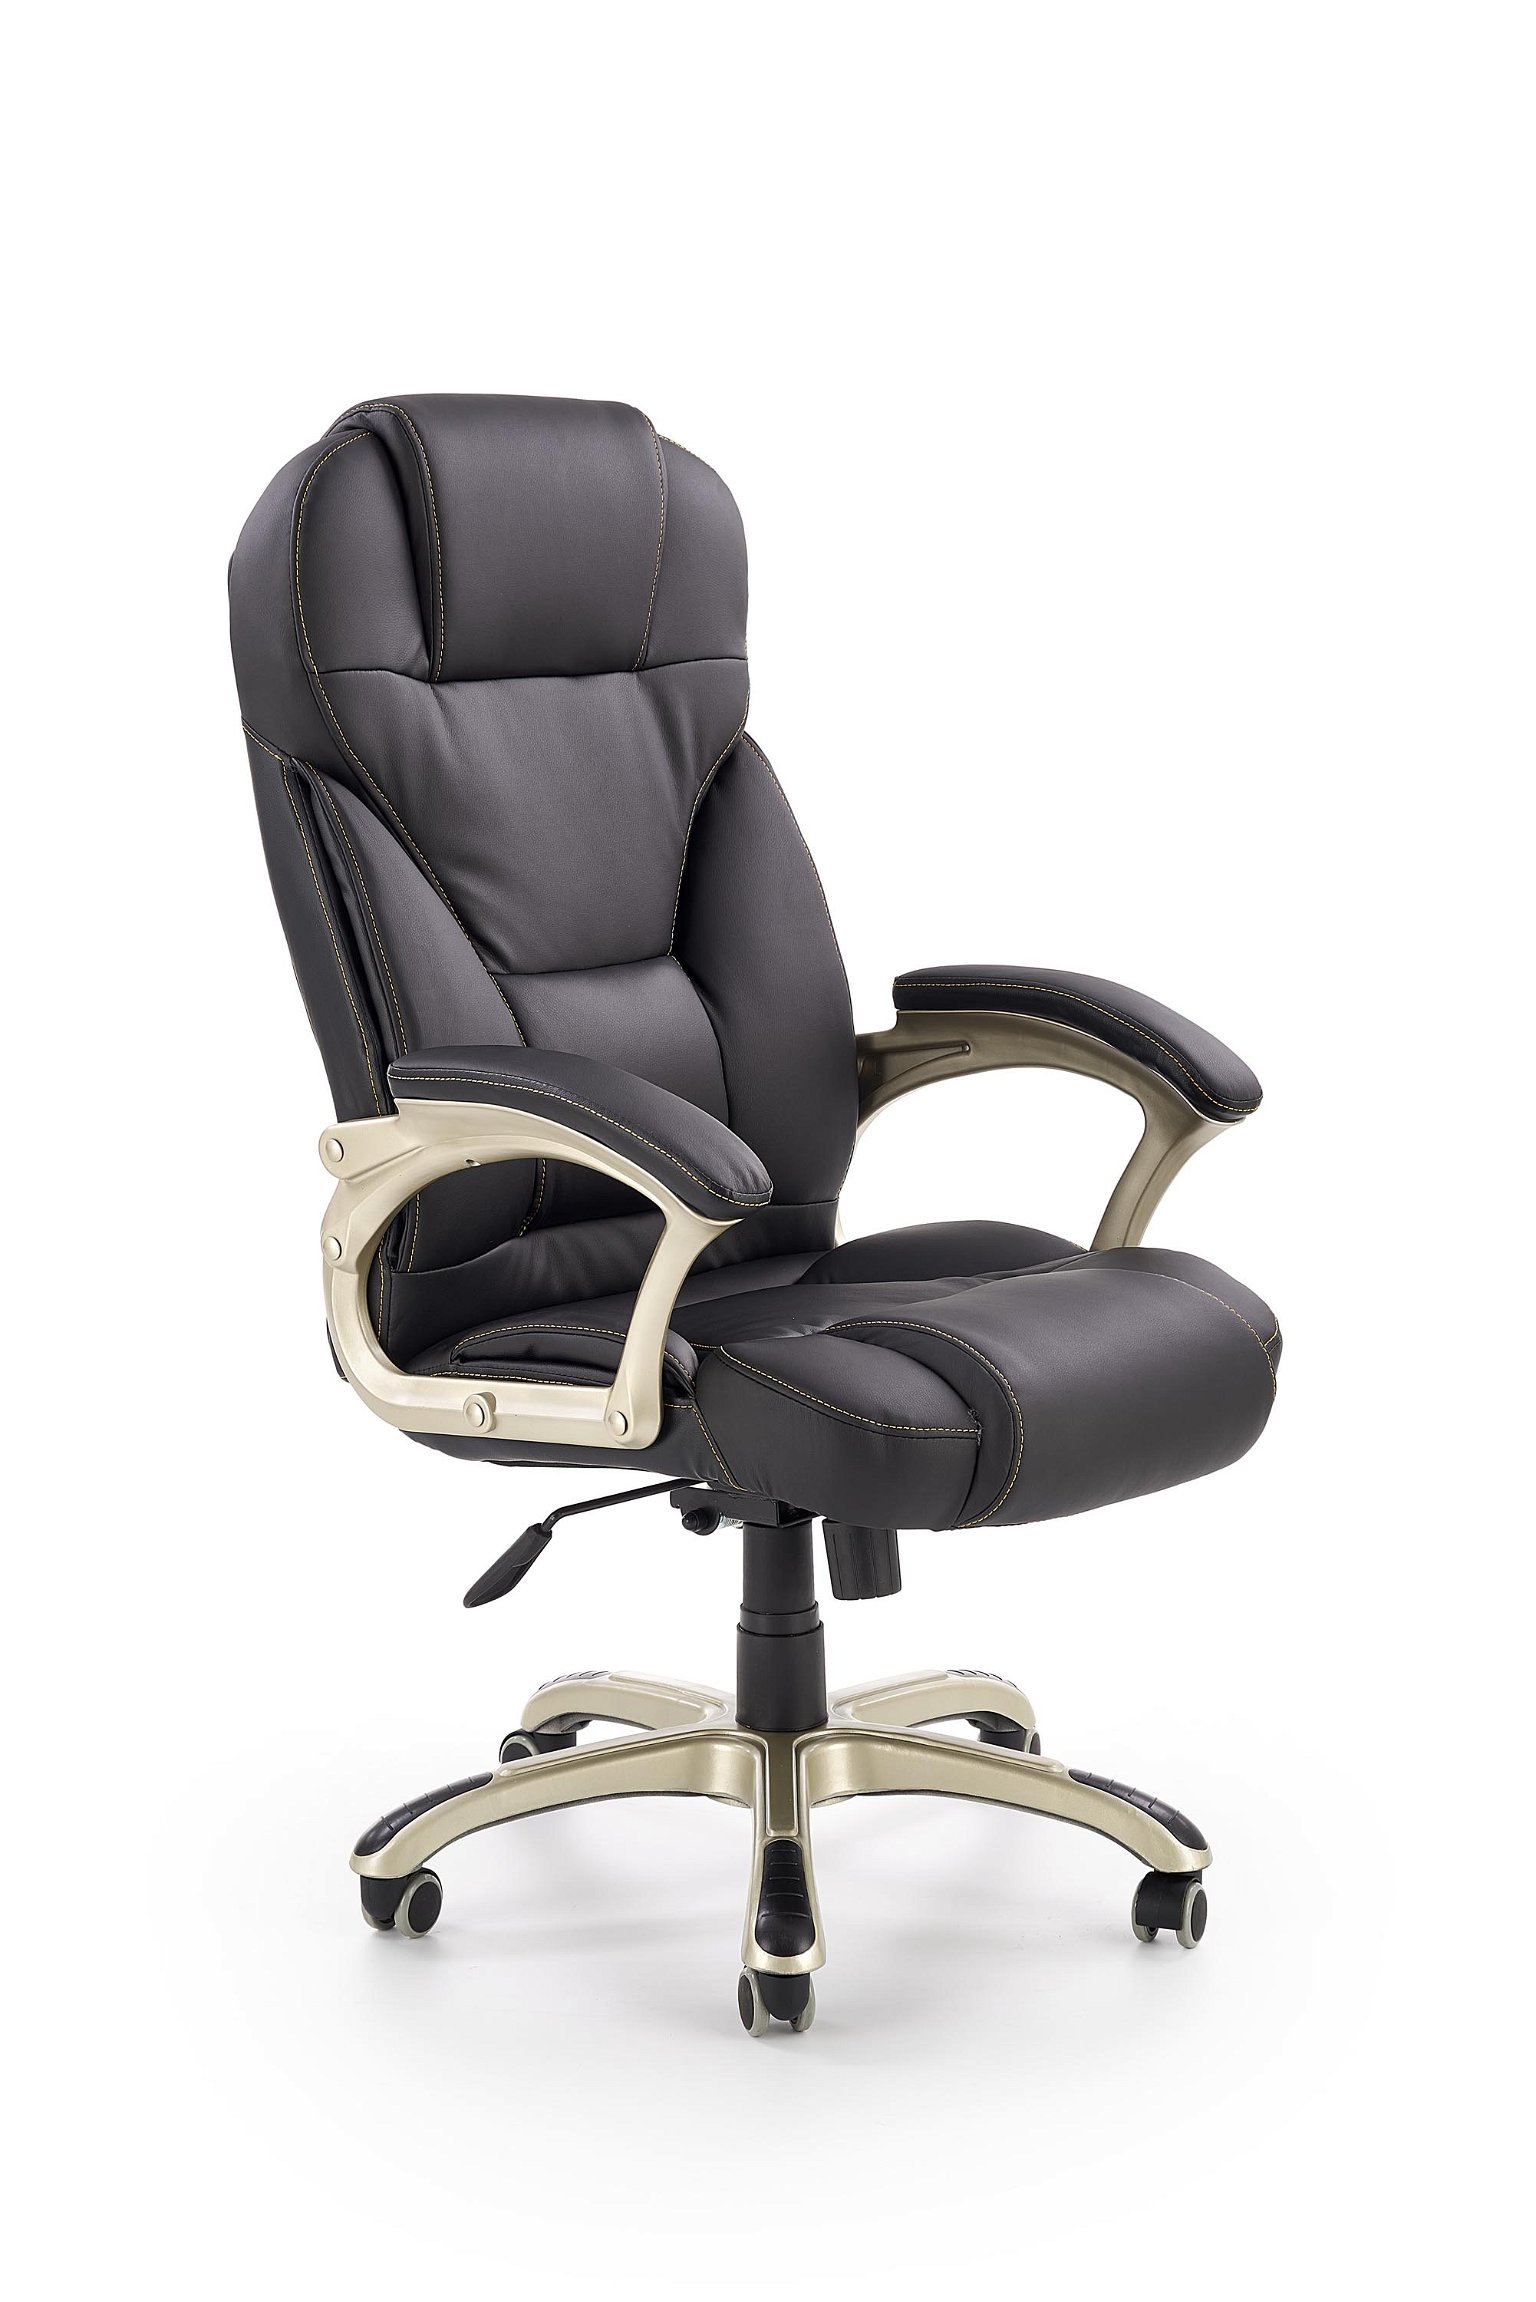 Biuro kėdė DESMOND, juoda - 1